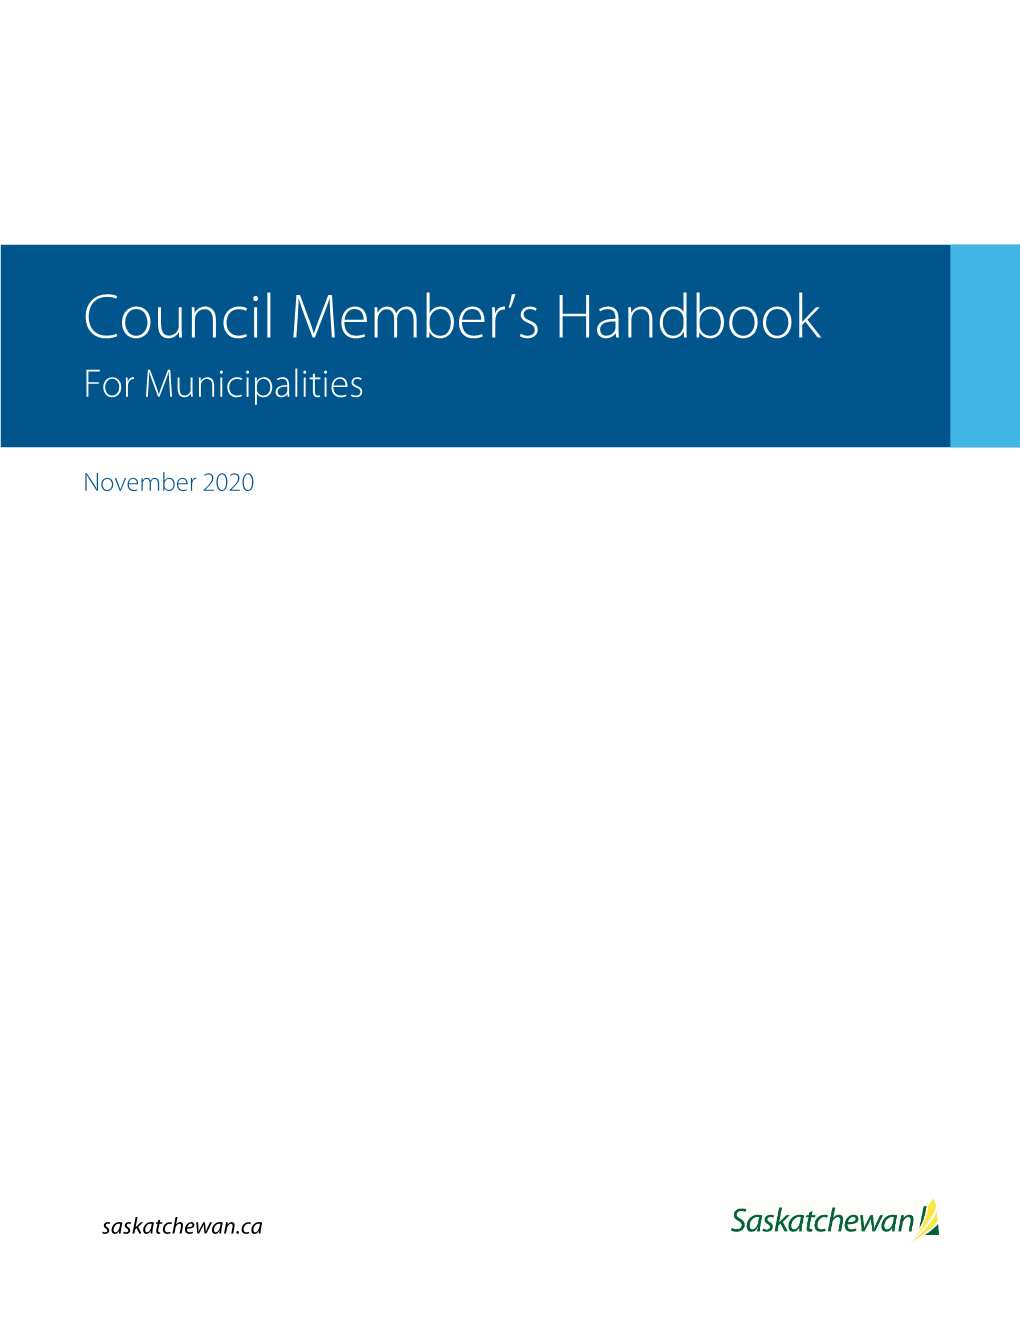 Council Member's Handbook for Municipalities